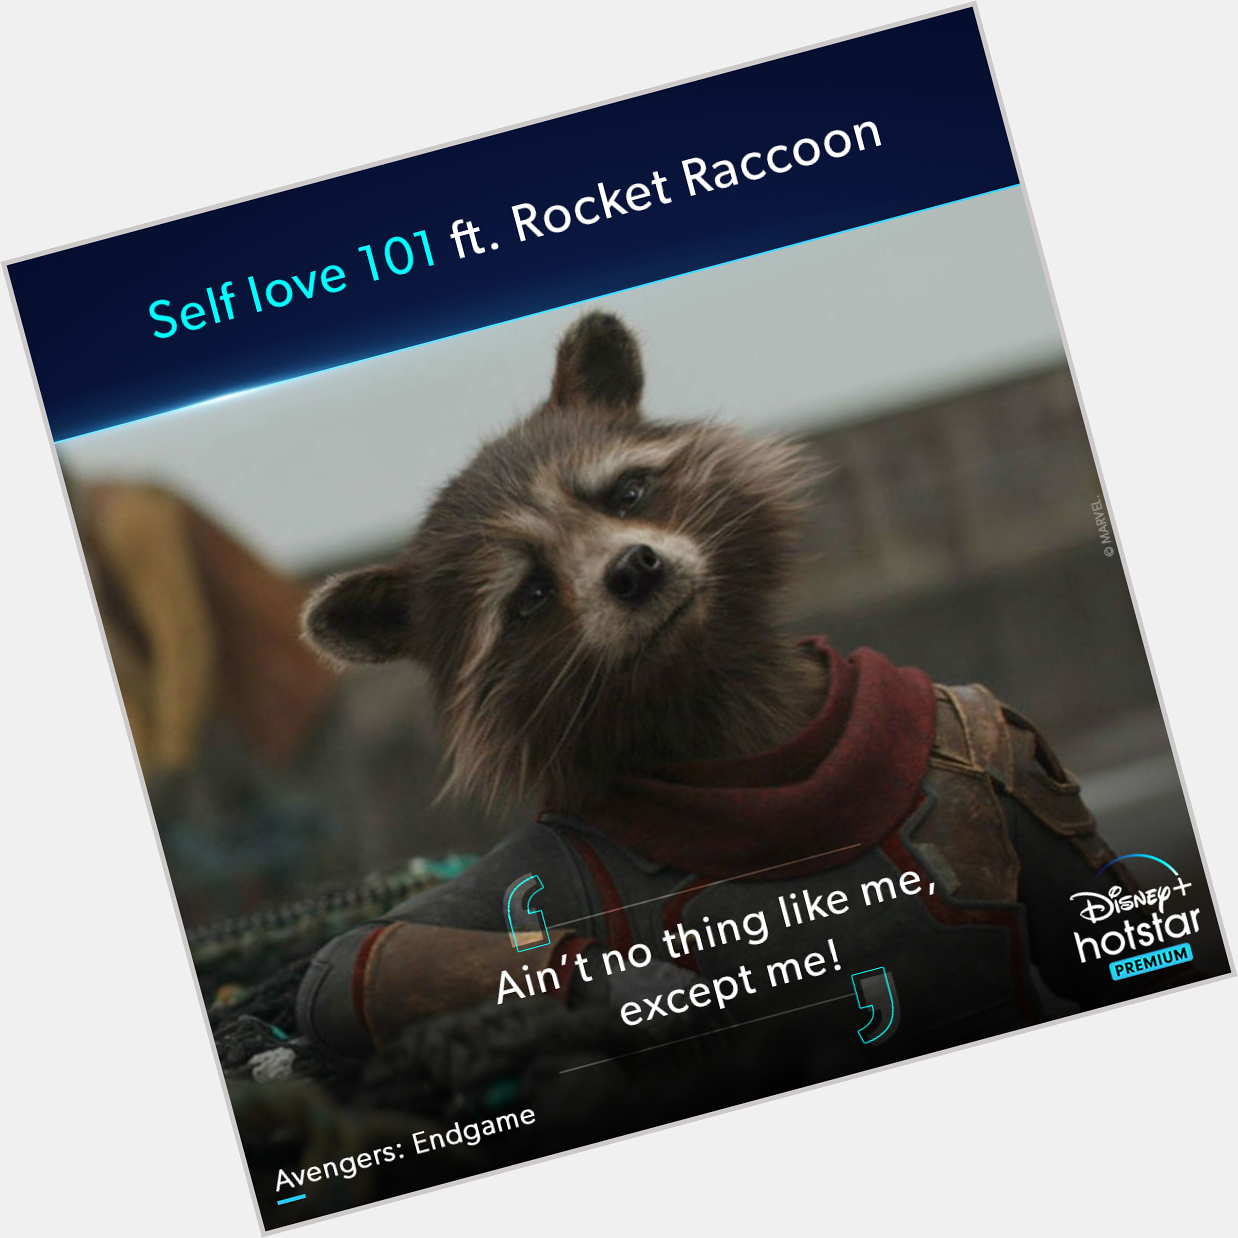 We love Rocket Raccoon as much as he loves himself! Happy Birthday, Bradley Cooper 